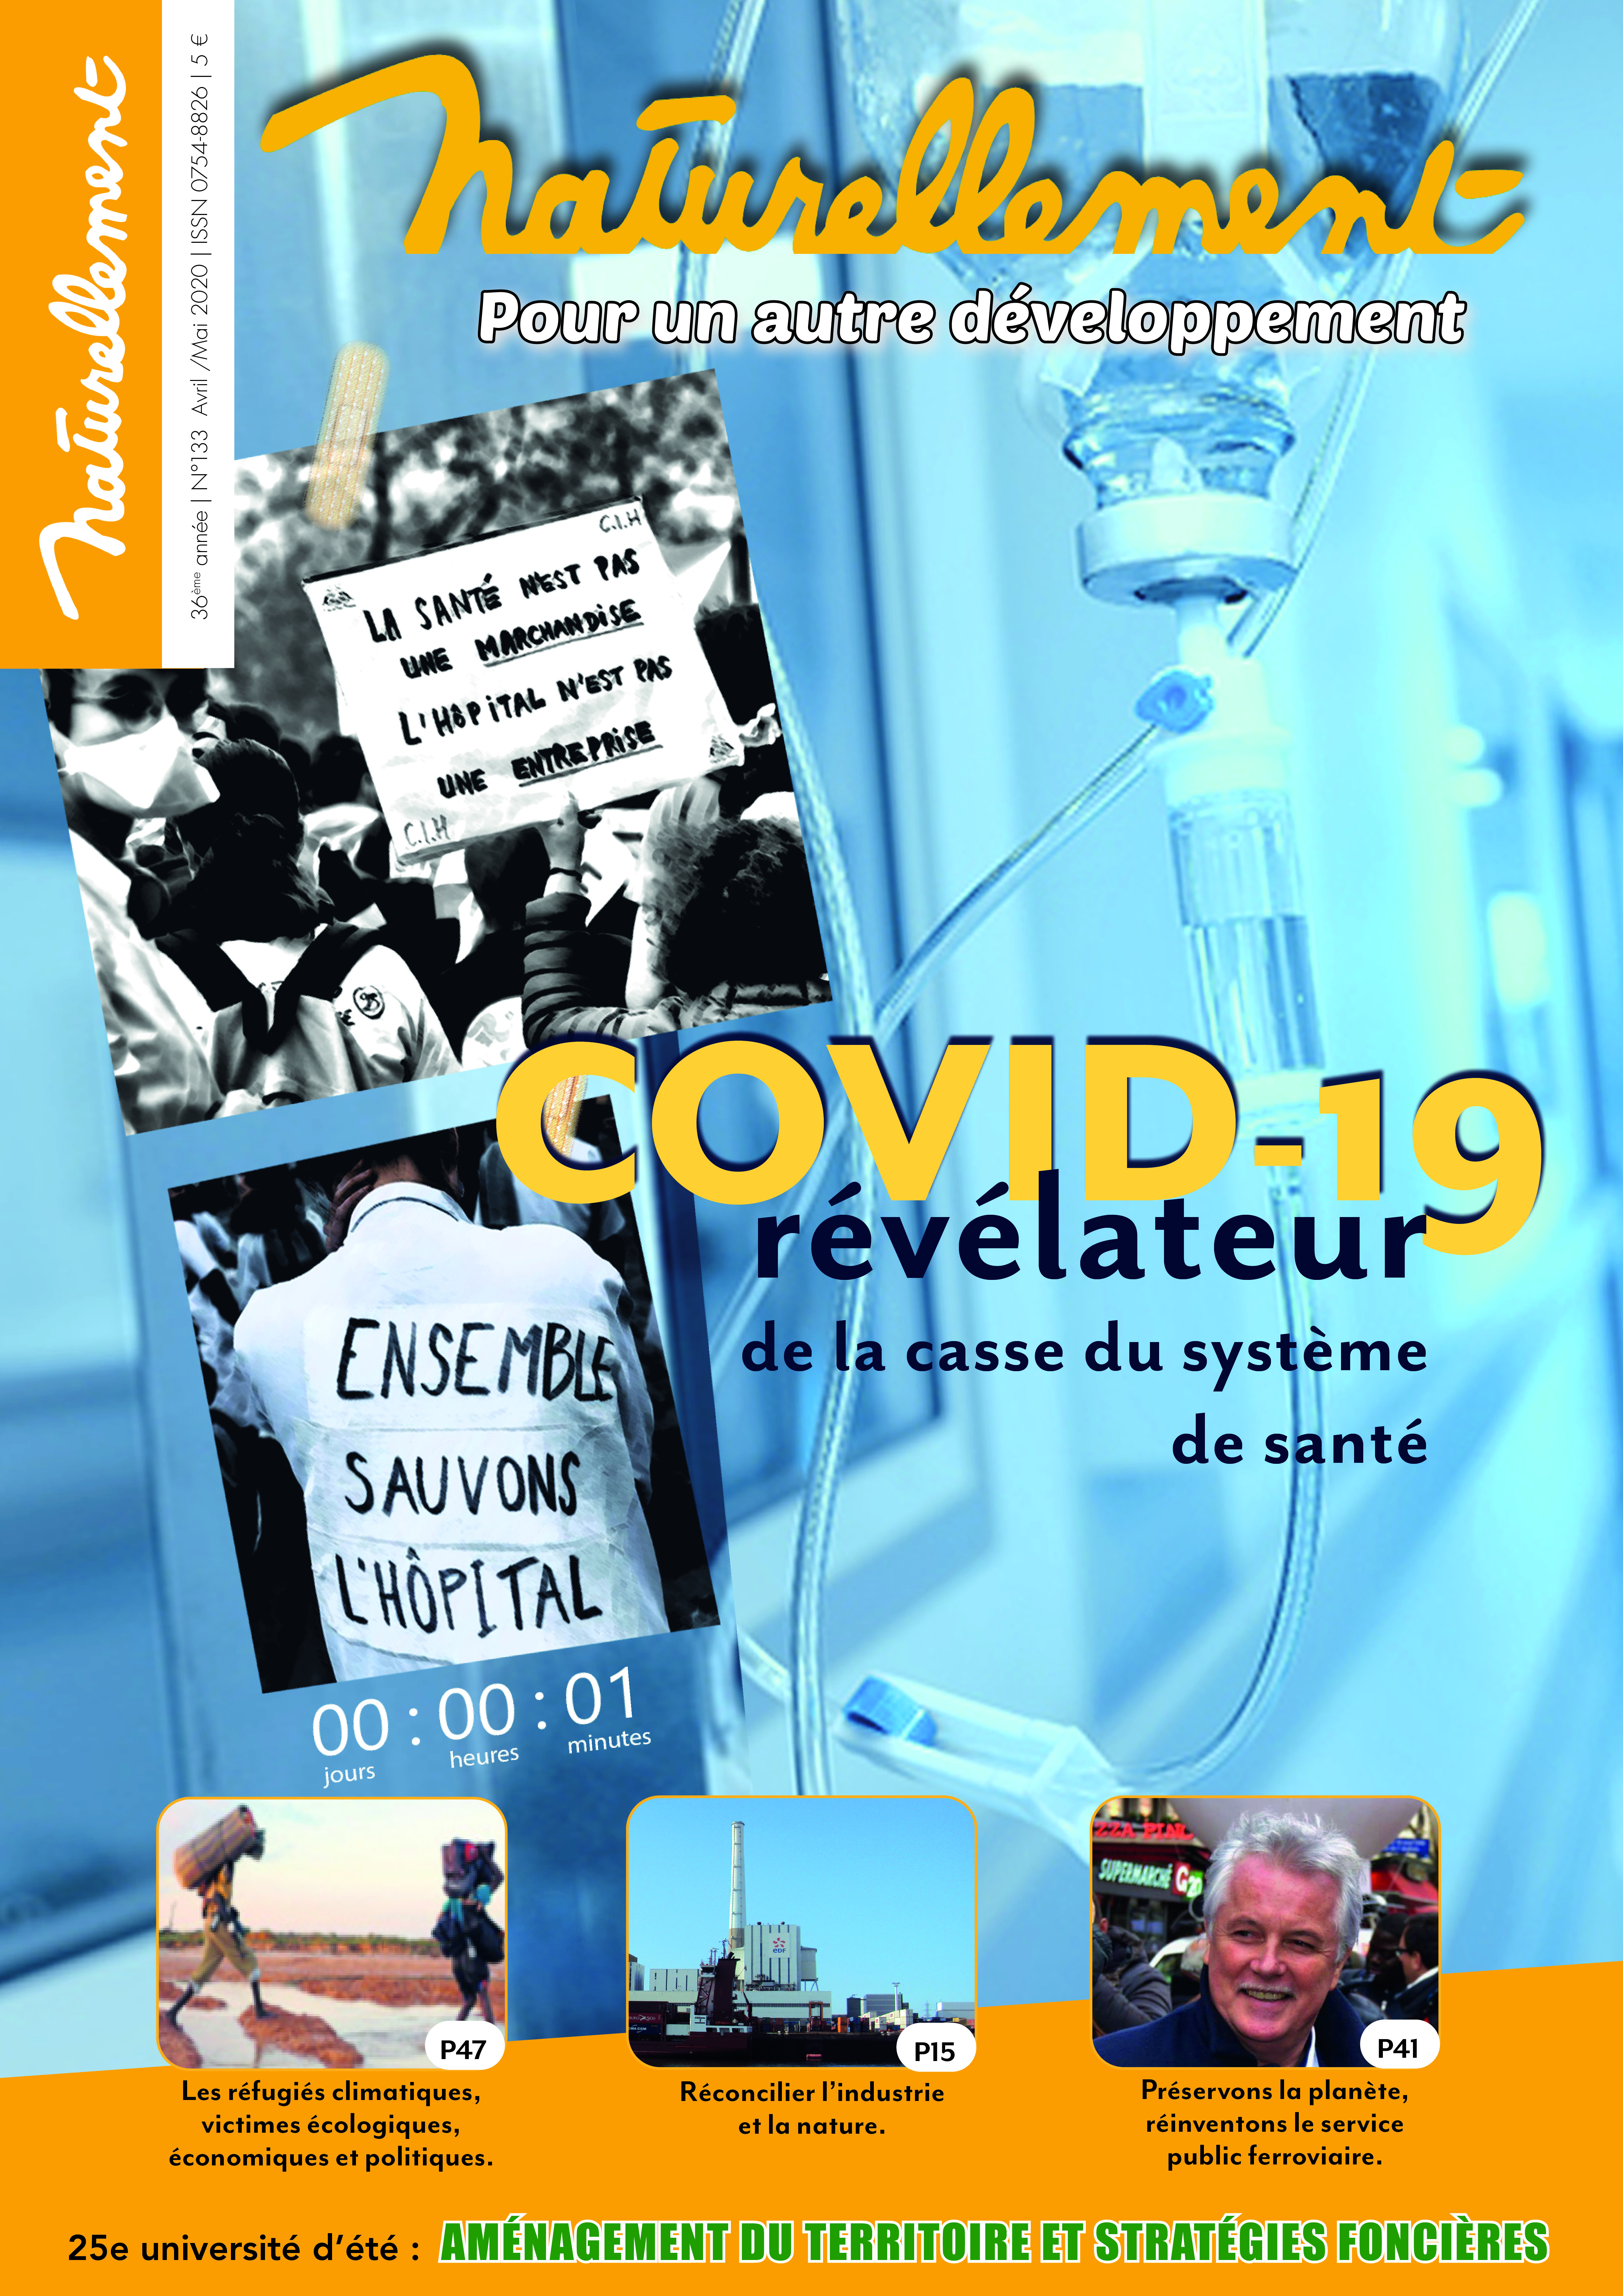 (19) Coronavirus point de vue : Le débat sur la Chloroquine ne peut pas enfermer le débat autour de cette seule question – On vous invite le 5 juin à débattre de la crise sanitaire –